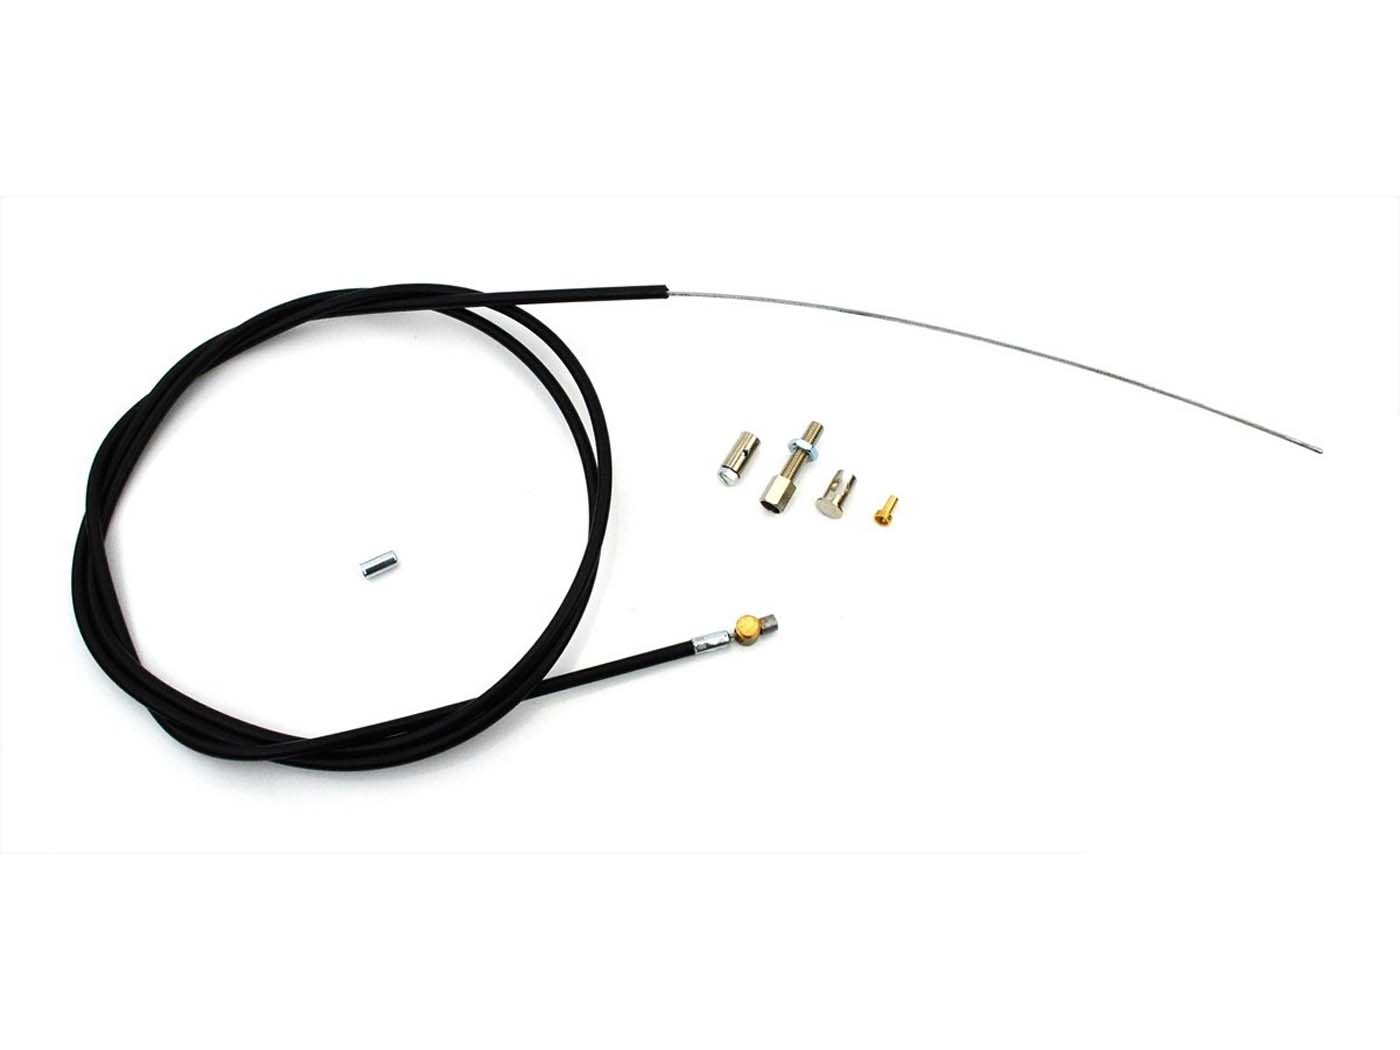 Clutch Cable MOGA 1600mm For Kreidler, Florett, Florett RMC K54/421, RM K54/42 D, K54/404